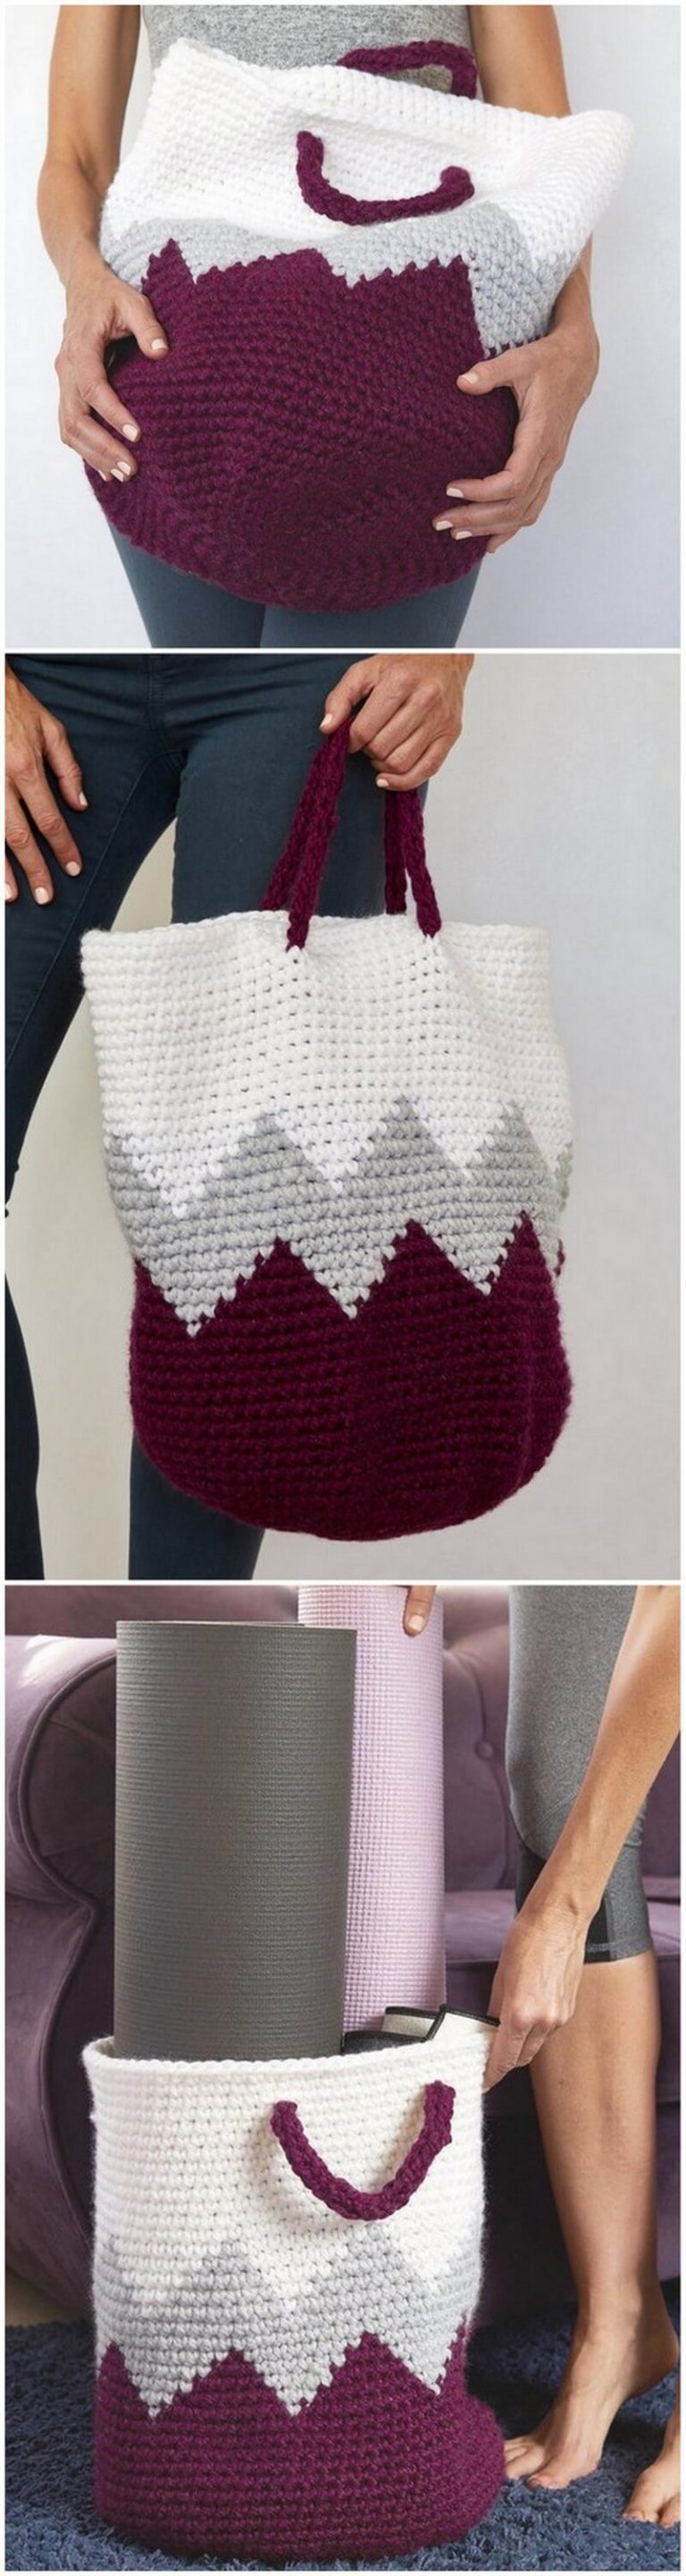 50+ Free Crochet Basket Patterns | Easy Crochet Ideas